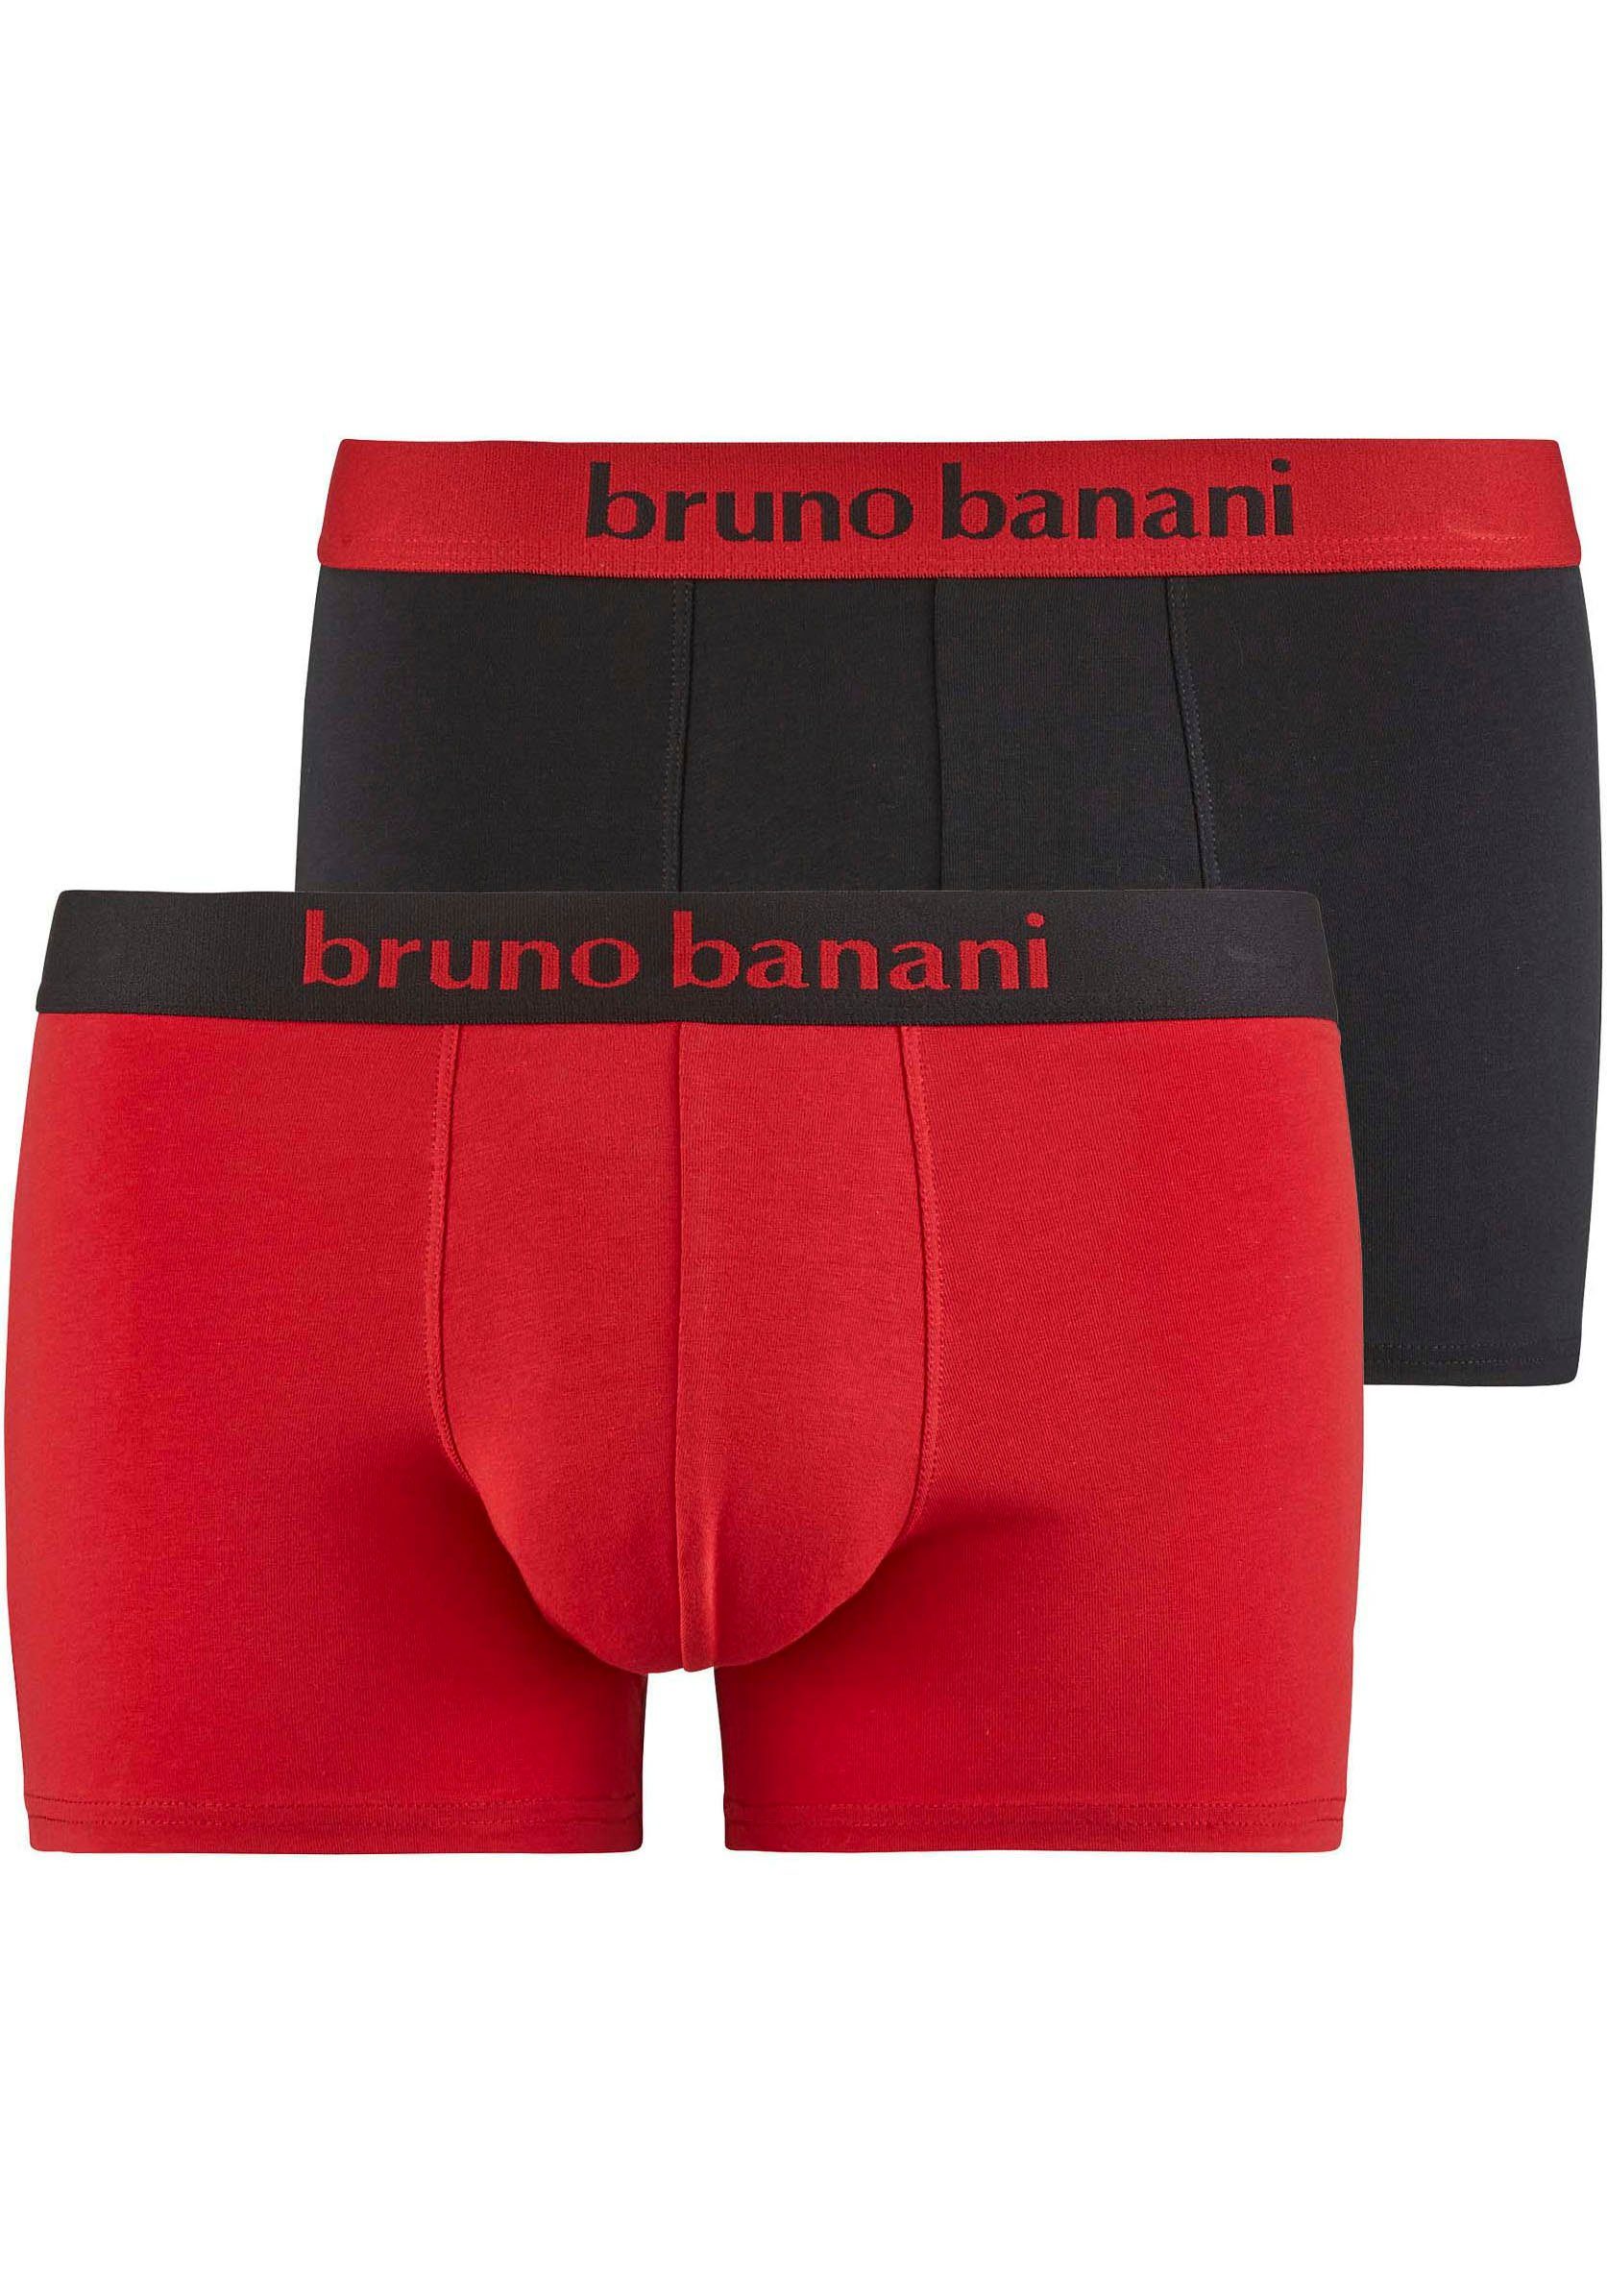 Bruno Banani Boxershort Flowing (set 2 stuks)